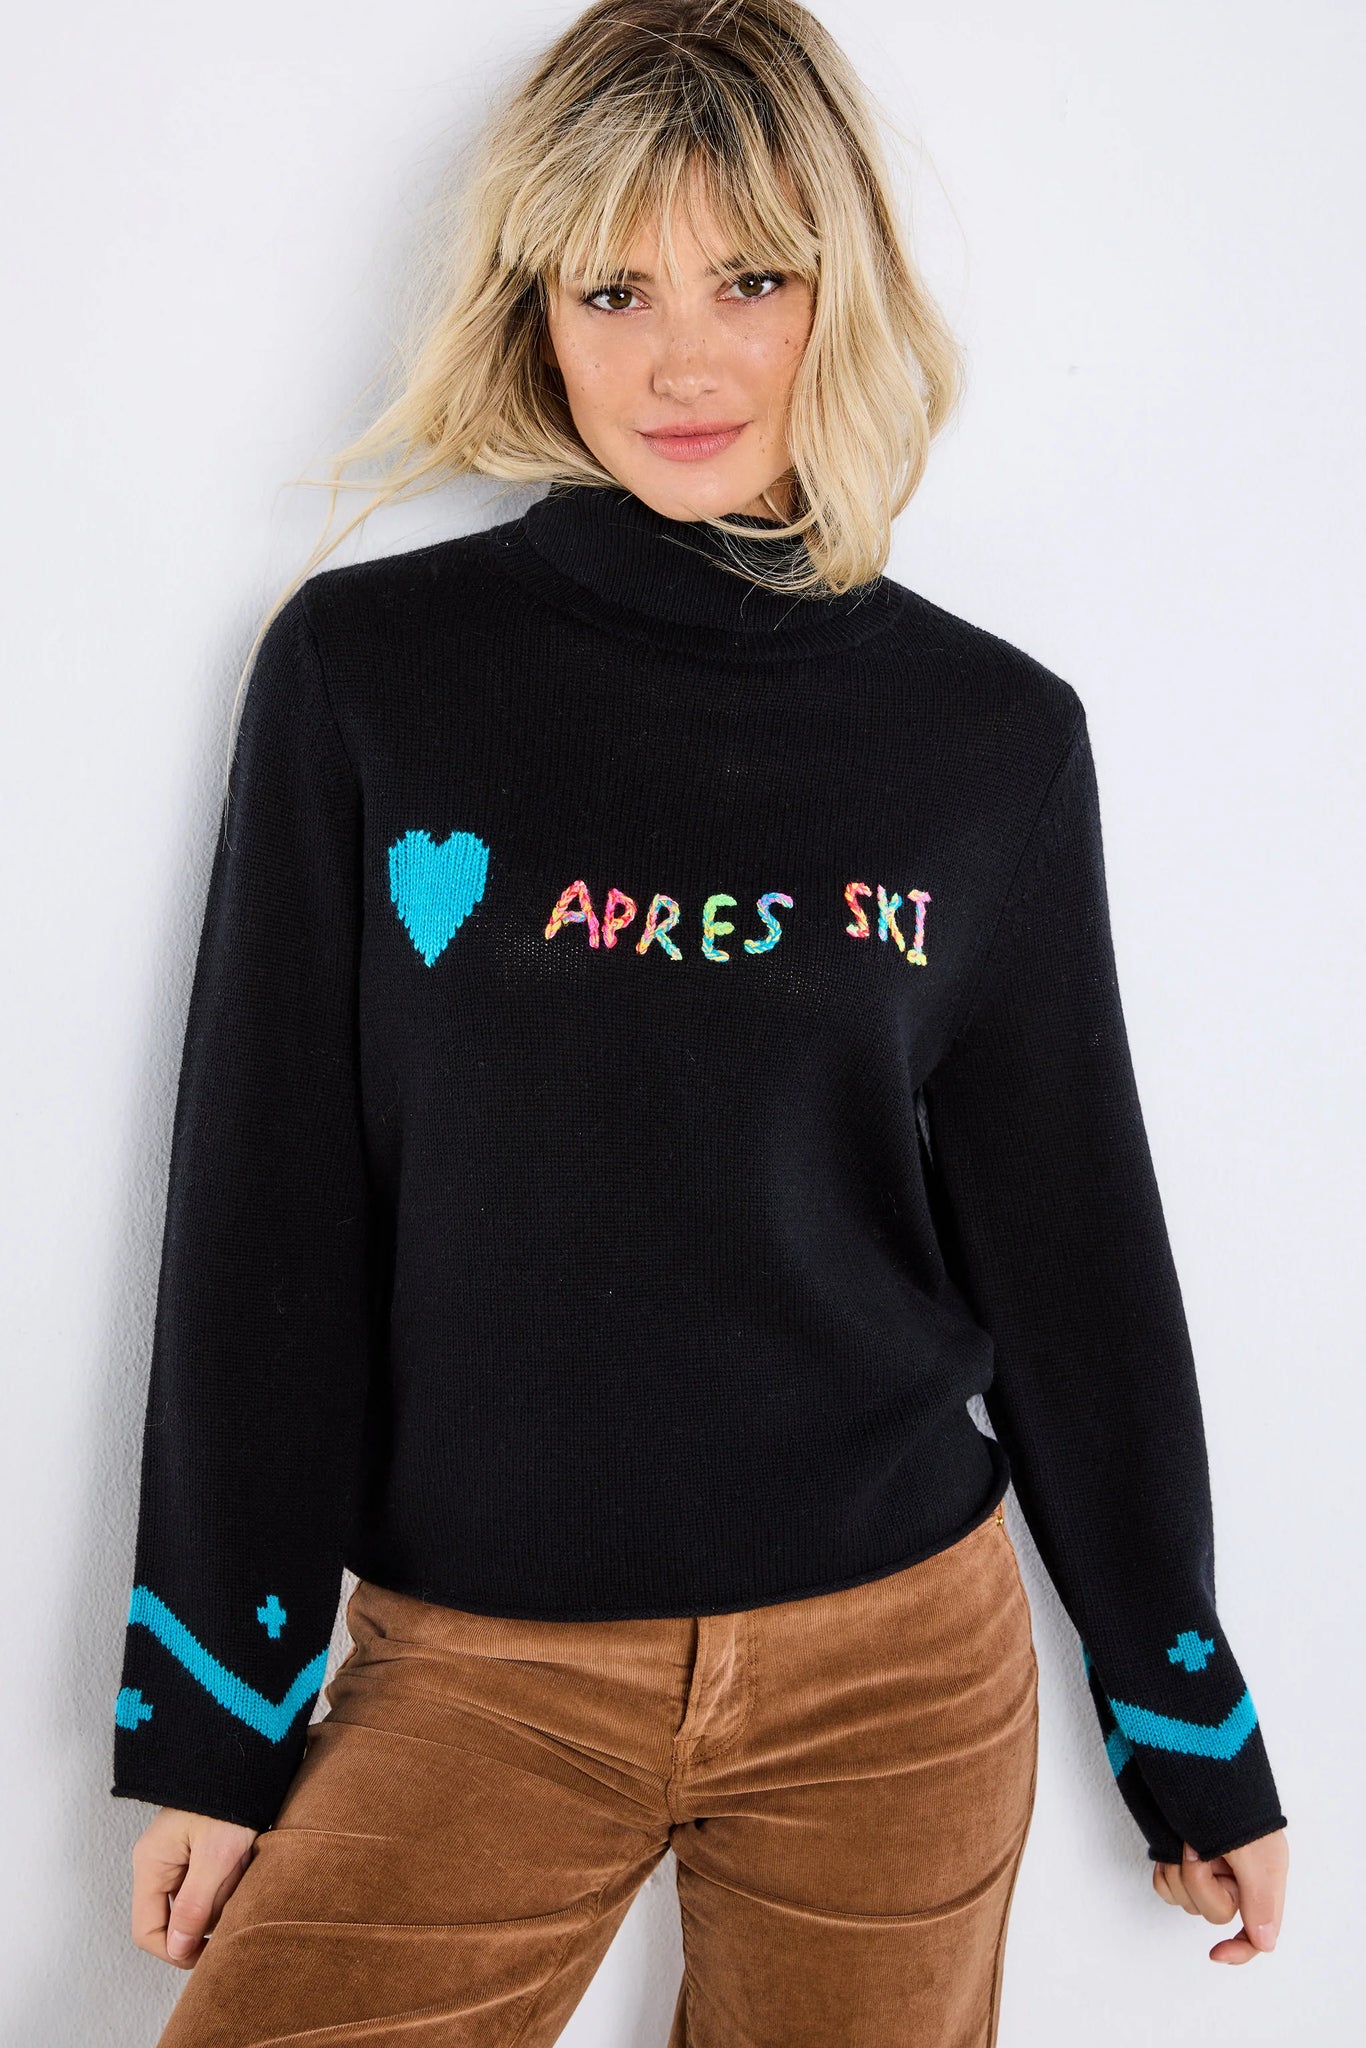 Apres Ski Sweater - Black